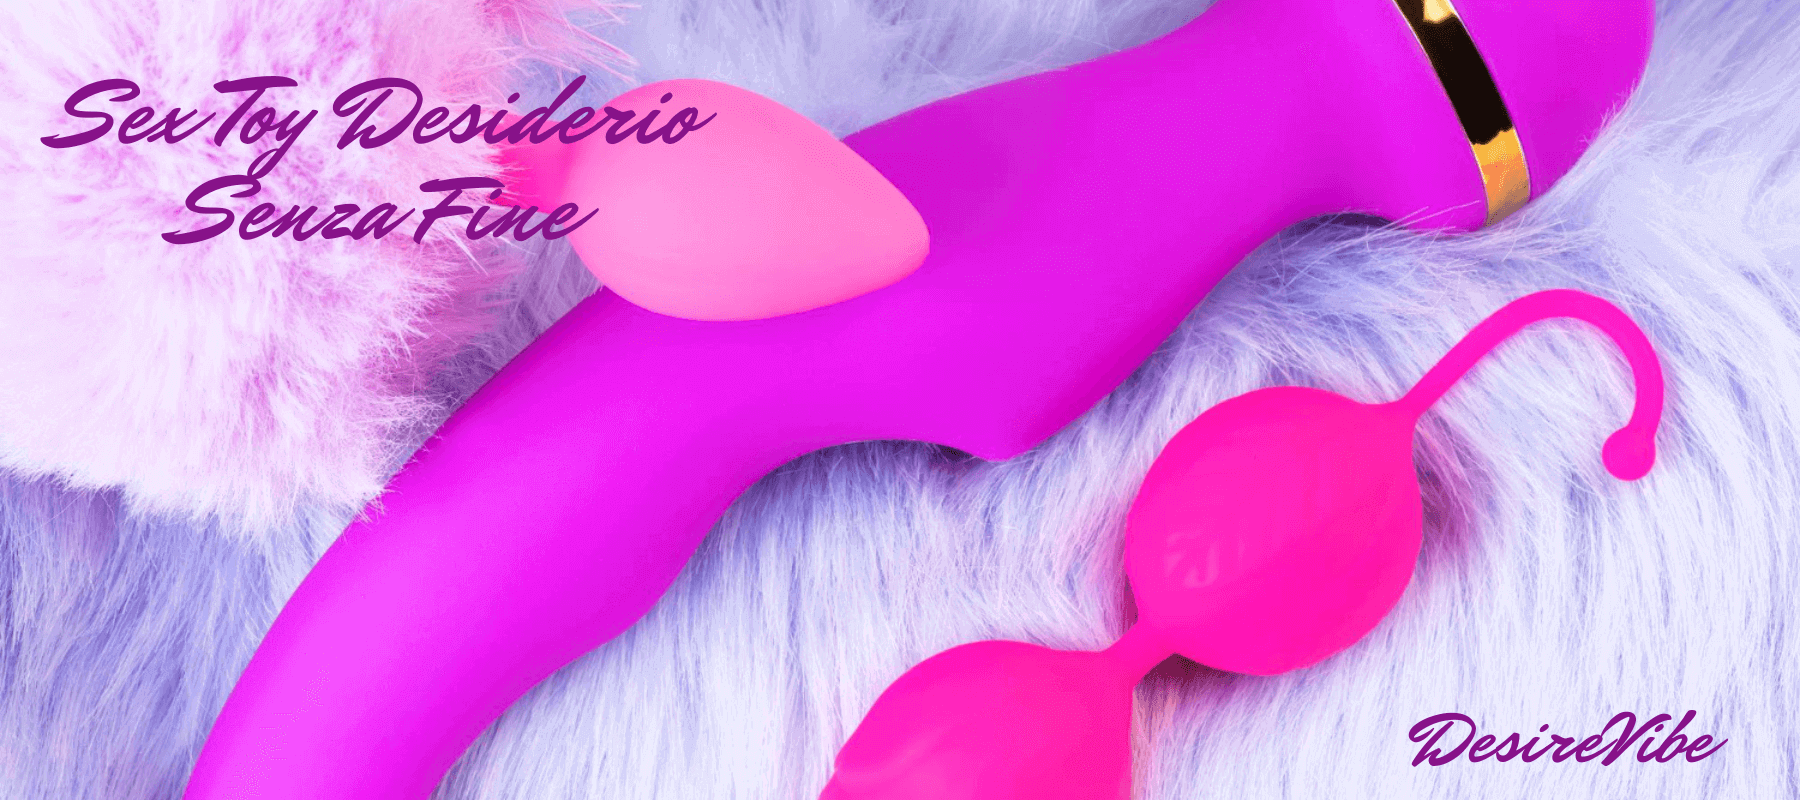 Elegante composizione di DesireVibe con sex toys fucsia per piacere personale, tra cui vibratore e palline geisha, su sfondo soffice, sottolineando lusso e sensualità.